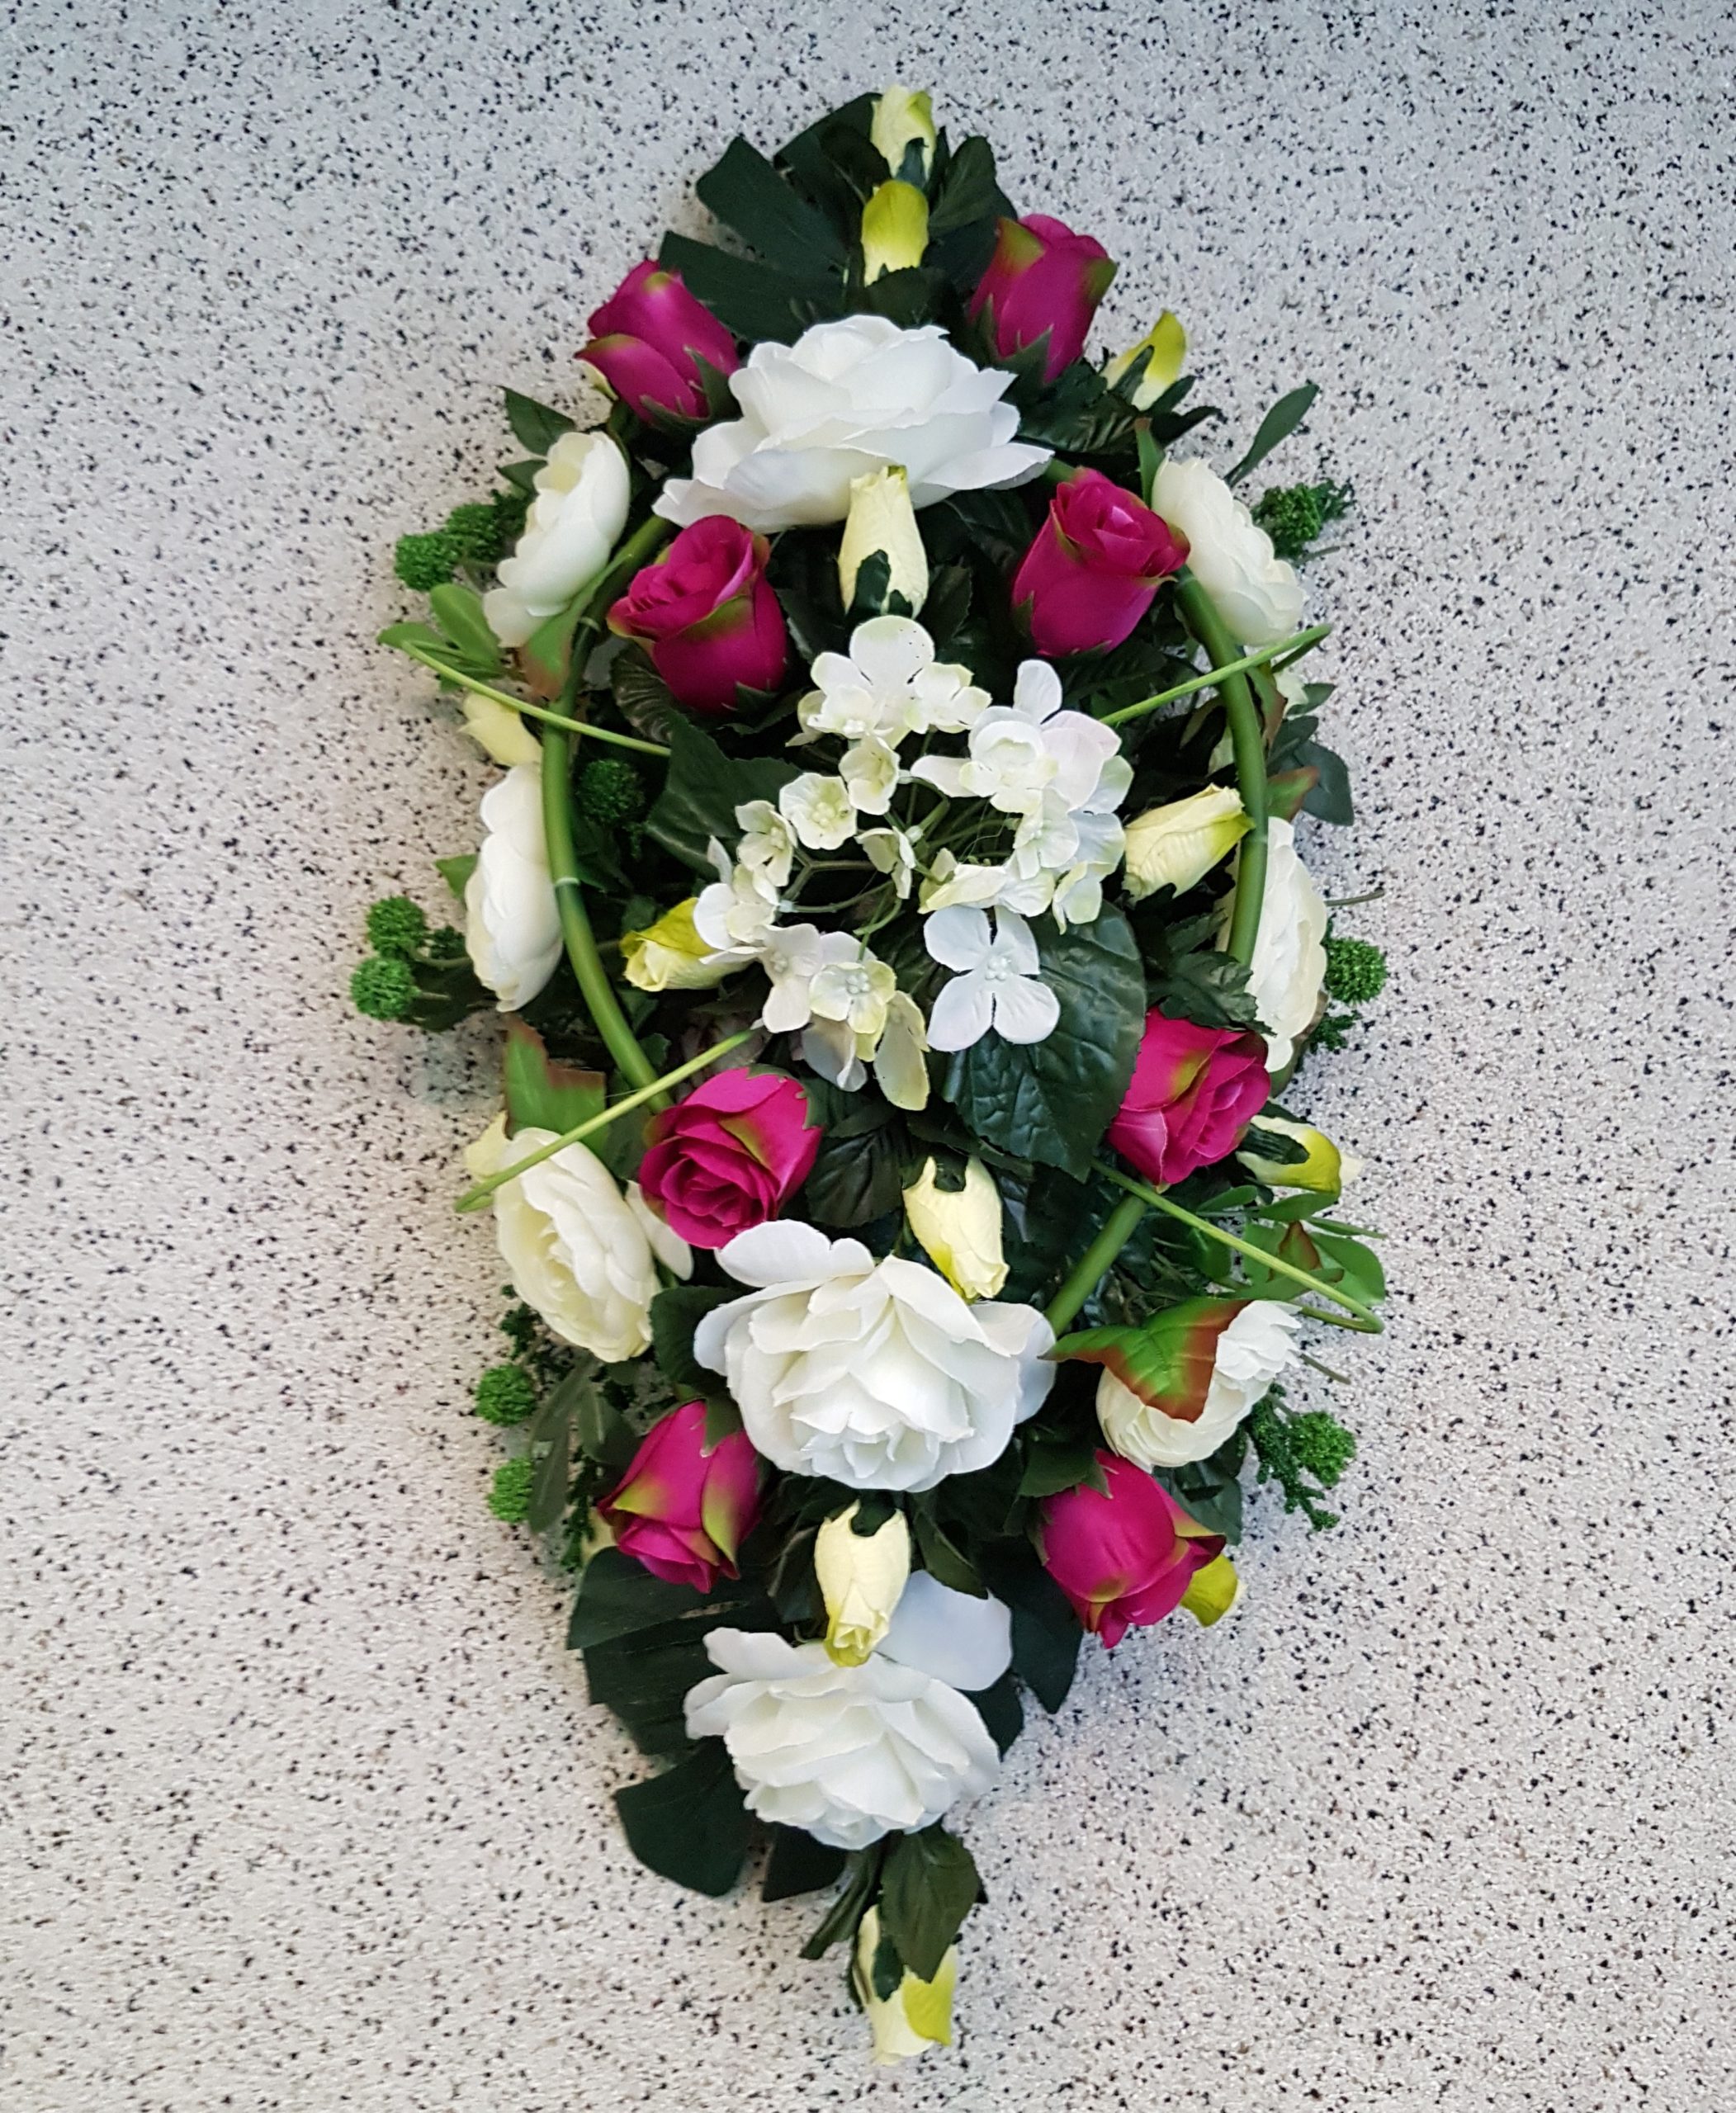 Gerbe 1 - Fleurs pour des obsèques - Funérailles